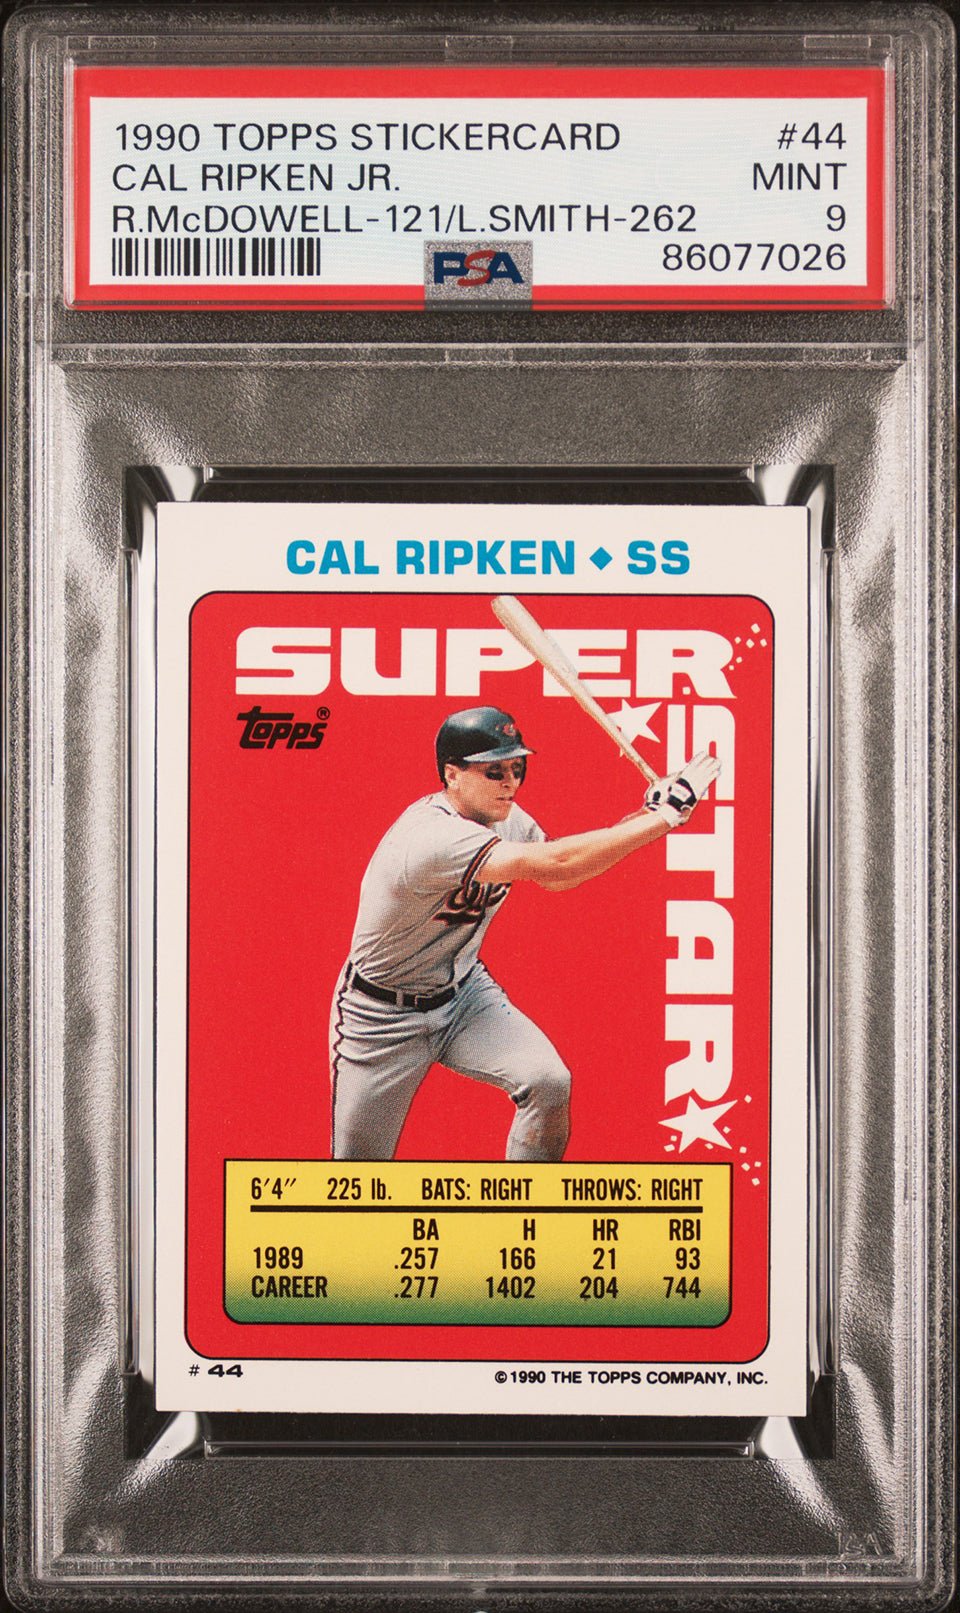 CAL RIPKEN JR PSA 9 1990 Topps Stickercard 44 R.McDowell-121 L.Smith-262 Baseball Base Graded Cards Sticker - Hobby Gems